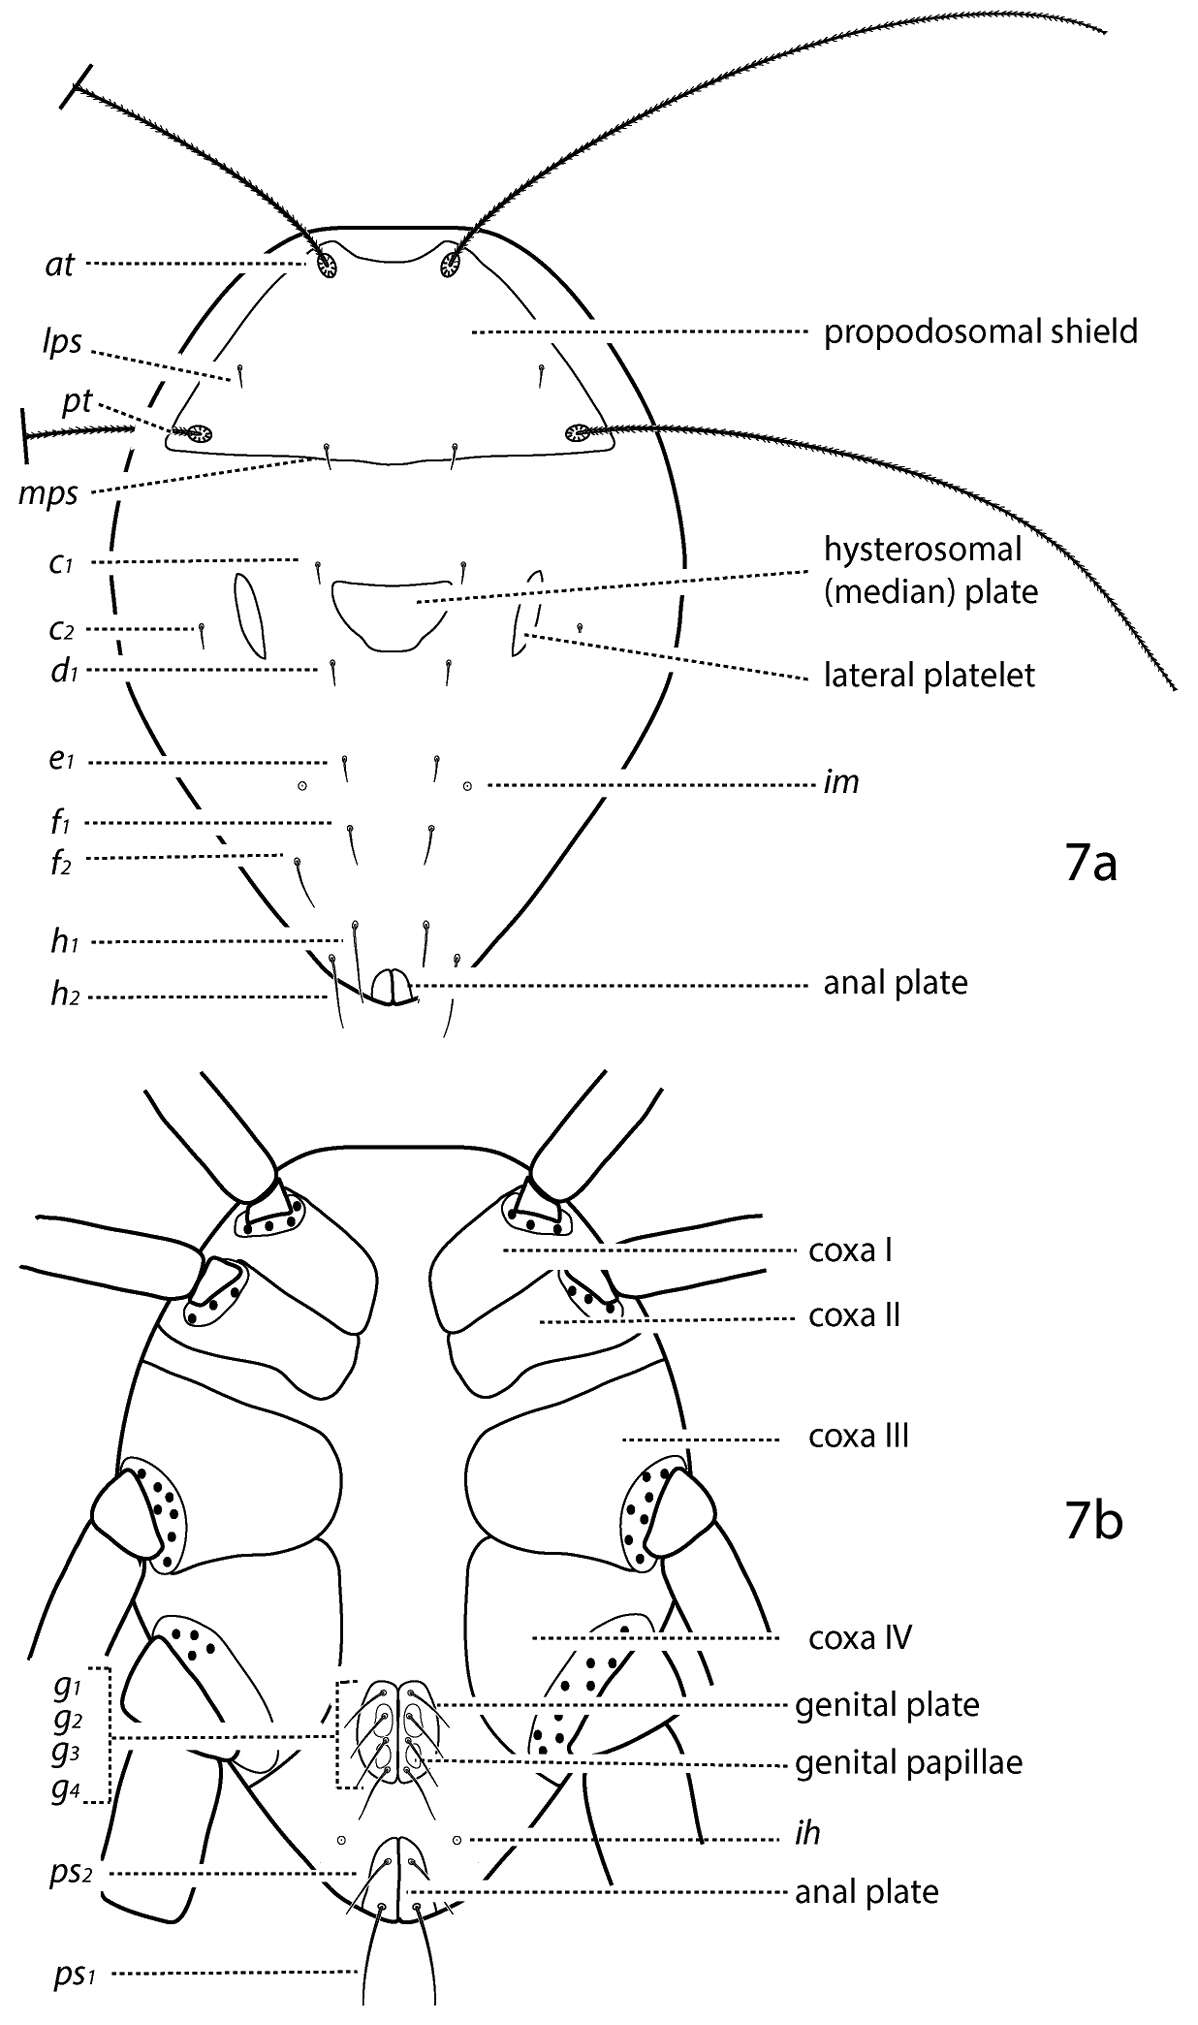 Image of mitelike mites